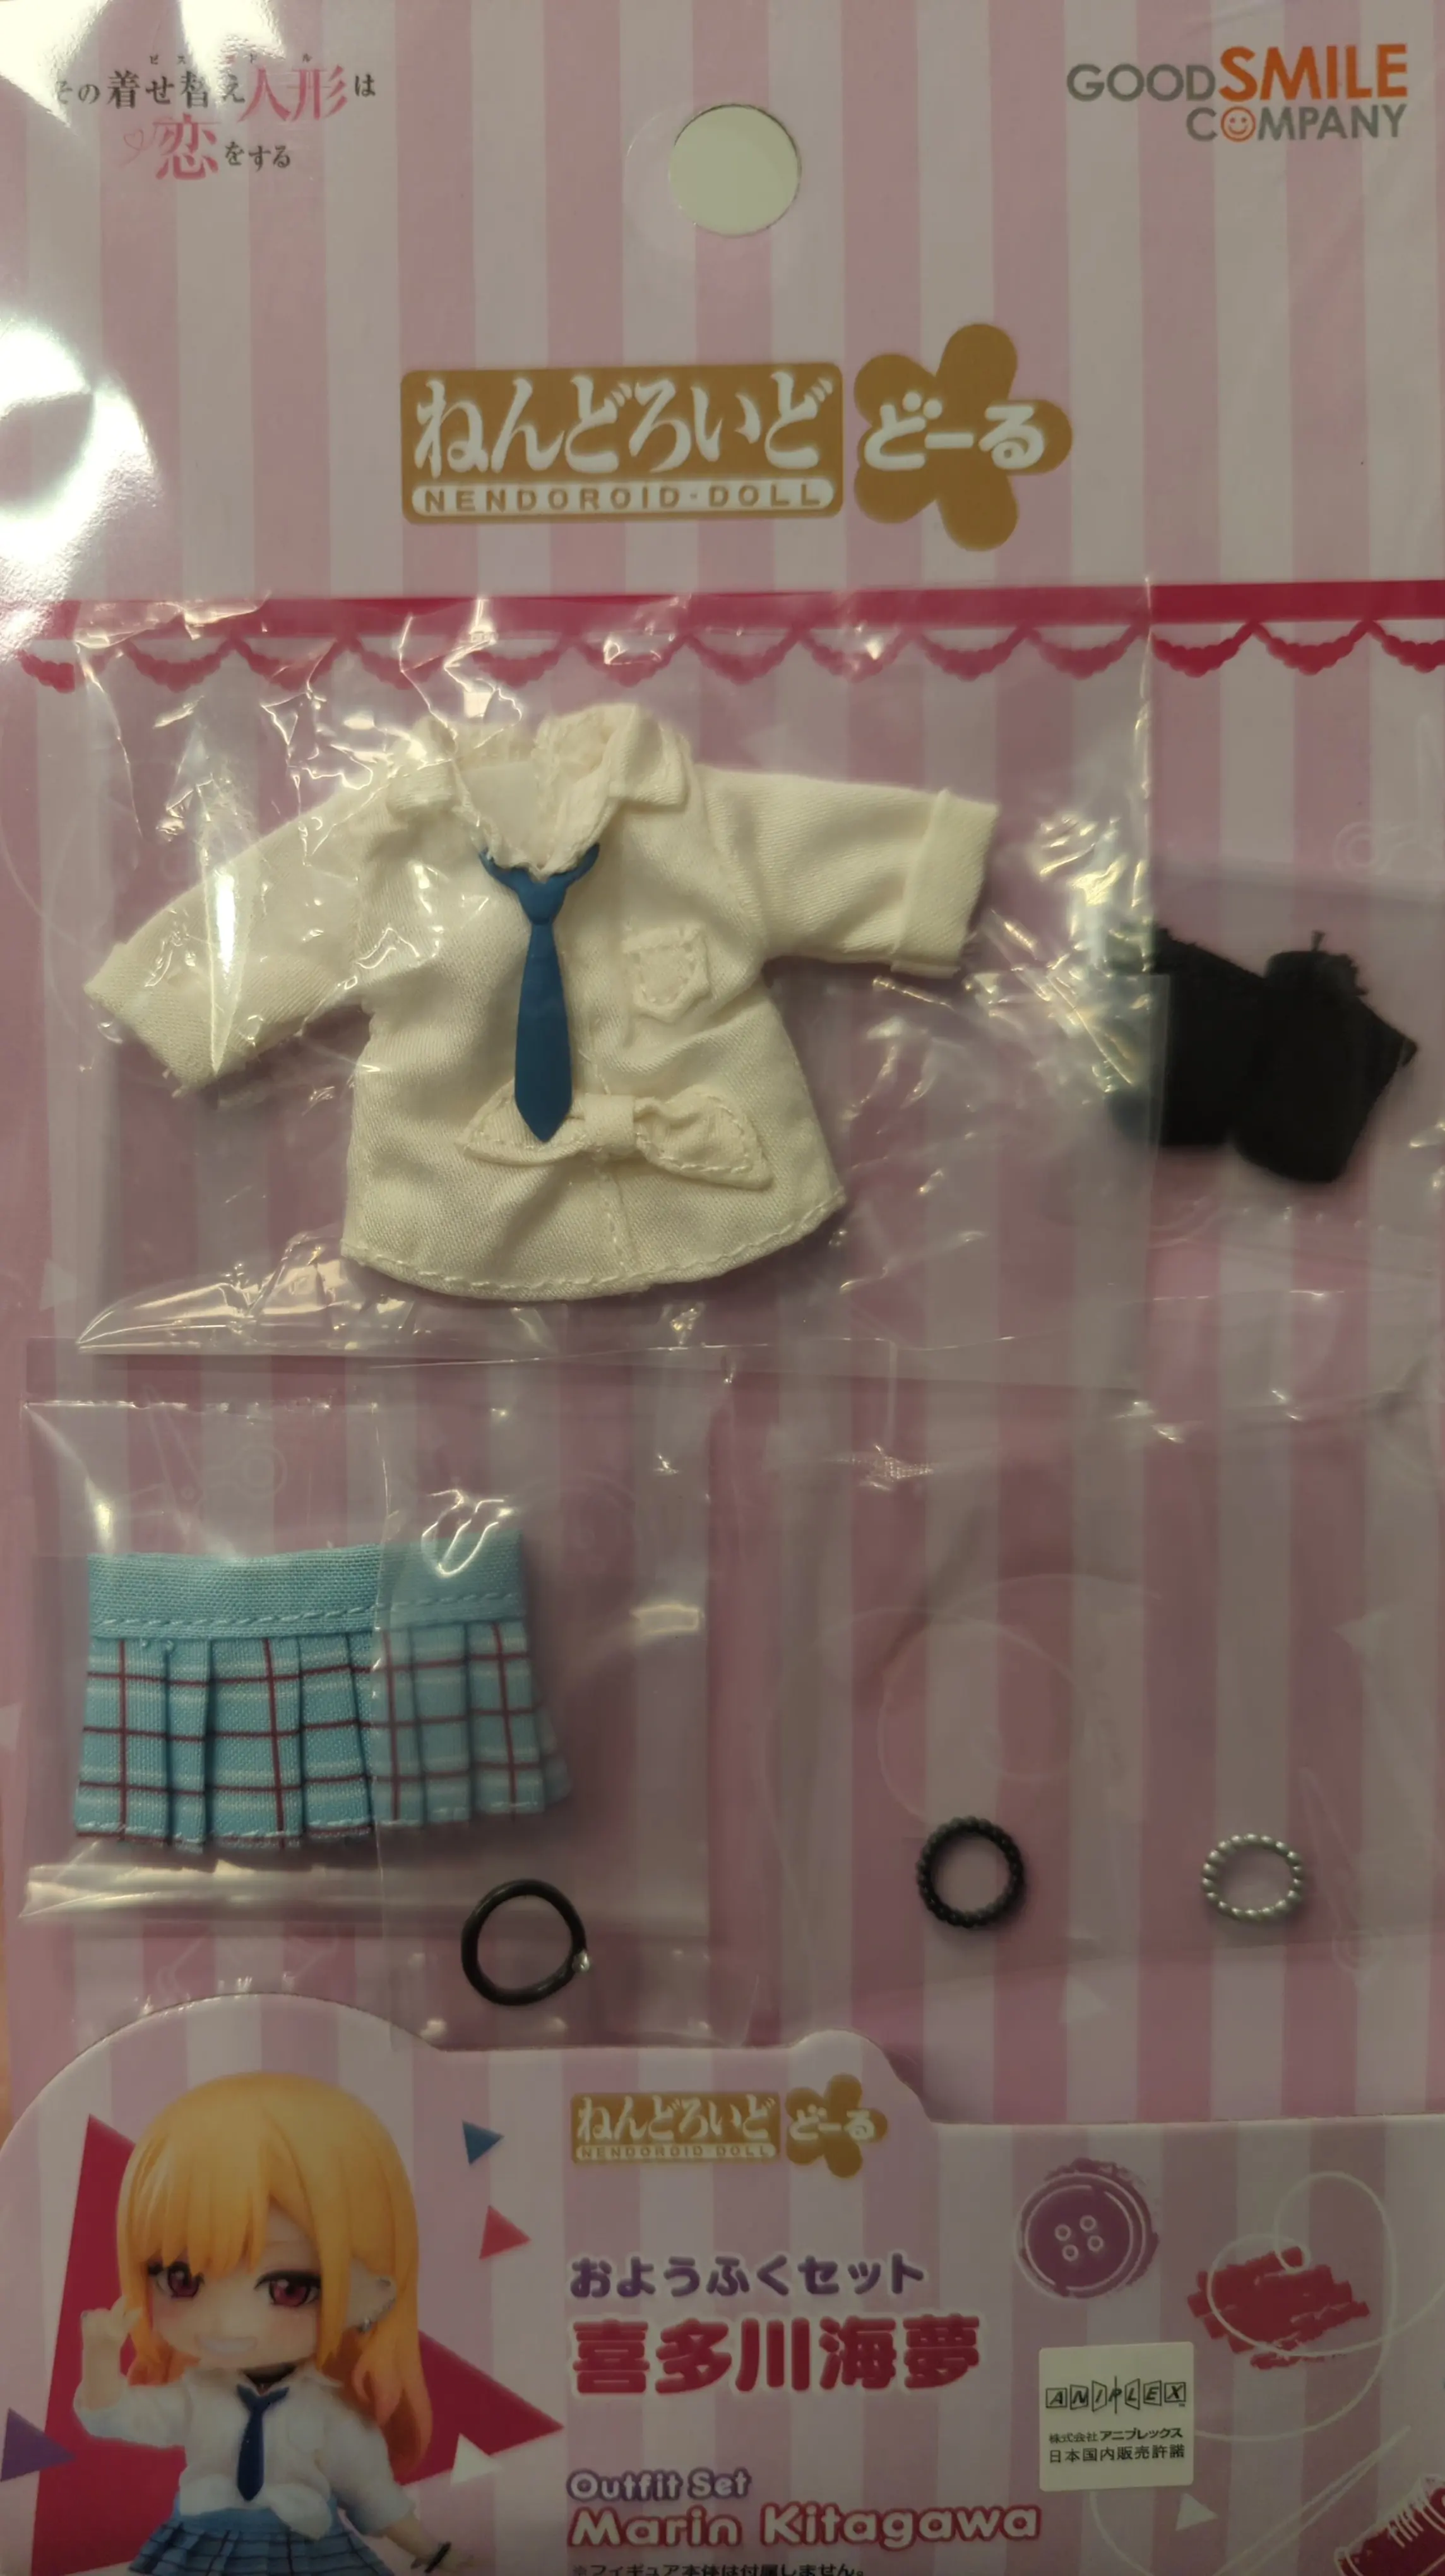 Nendoroid Doll - Nendoroid Doll Outfit Set / Kitagawa Marin